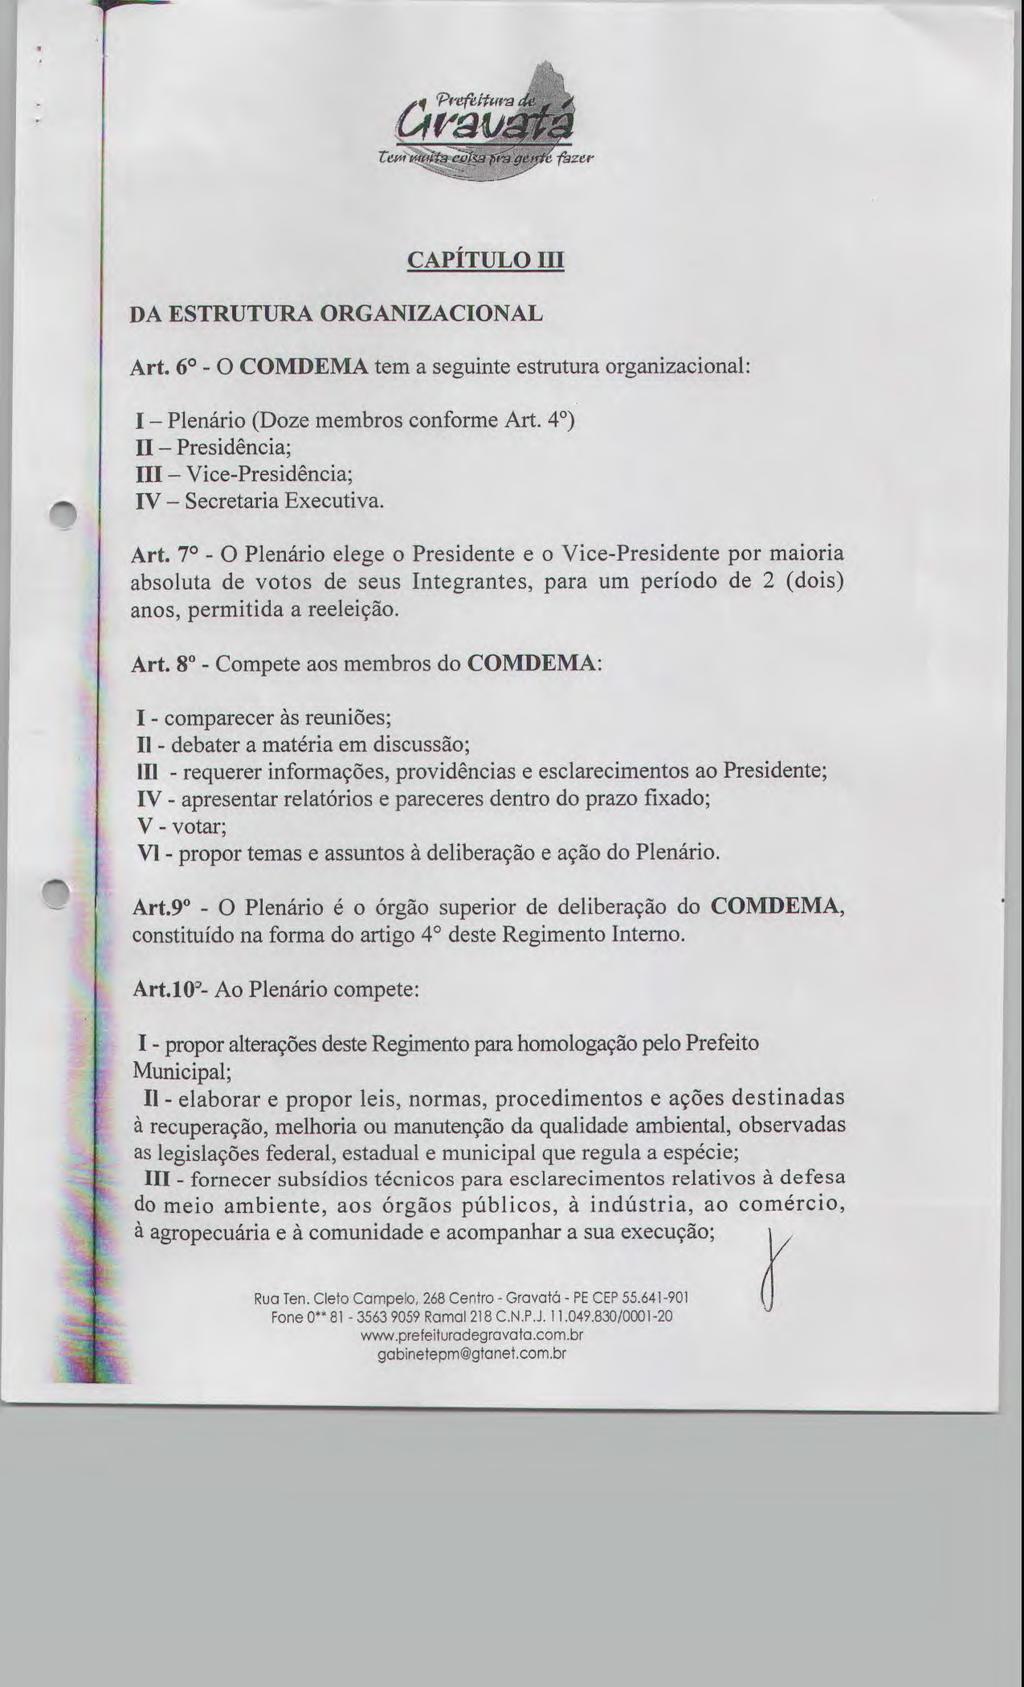 CAPÍTULO III DA ESTRUTURA ORGANIZACIONAL Art. 60 - O COMDEMA tem a seguinte estrutura organizacional: 1 Plenário (Doze membros conforme Art.